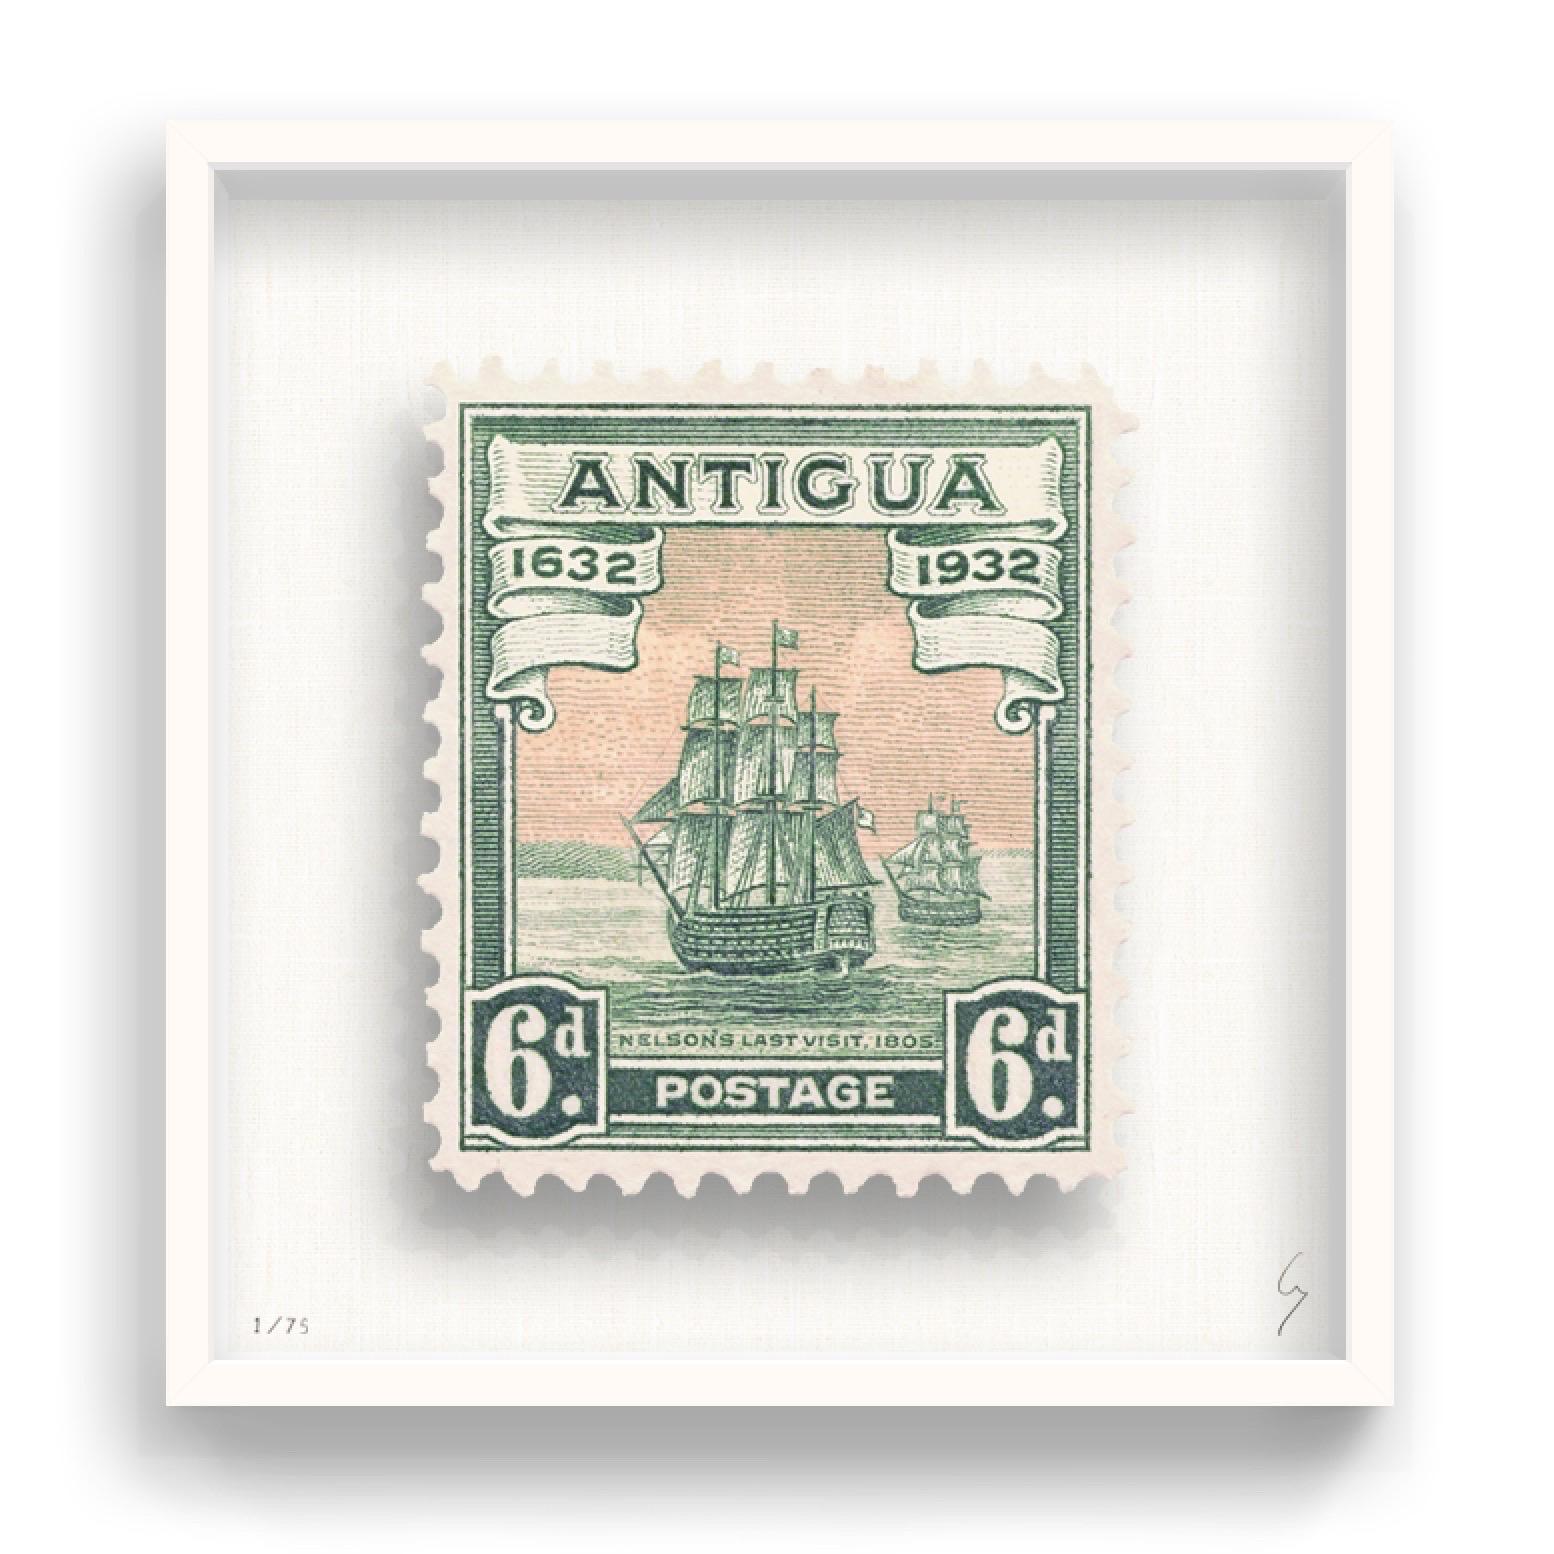 Guy Gee, Antigua (mittelgroß)

Handgravur auf 350gsm auf G.F Smith Karton
53 x 56cm (20 4/5 x 22 2/5 in)
Inklusive Rahmen 
Auflage von 75 

Jedes Kunstwerk von Guy wurde auf der Grundlage einer Originalbriefmarke digital nachgebildet. Das von Hand